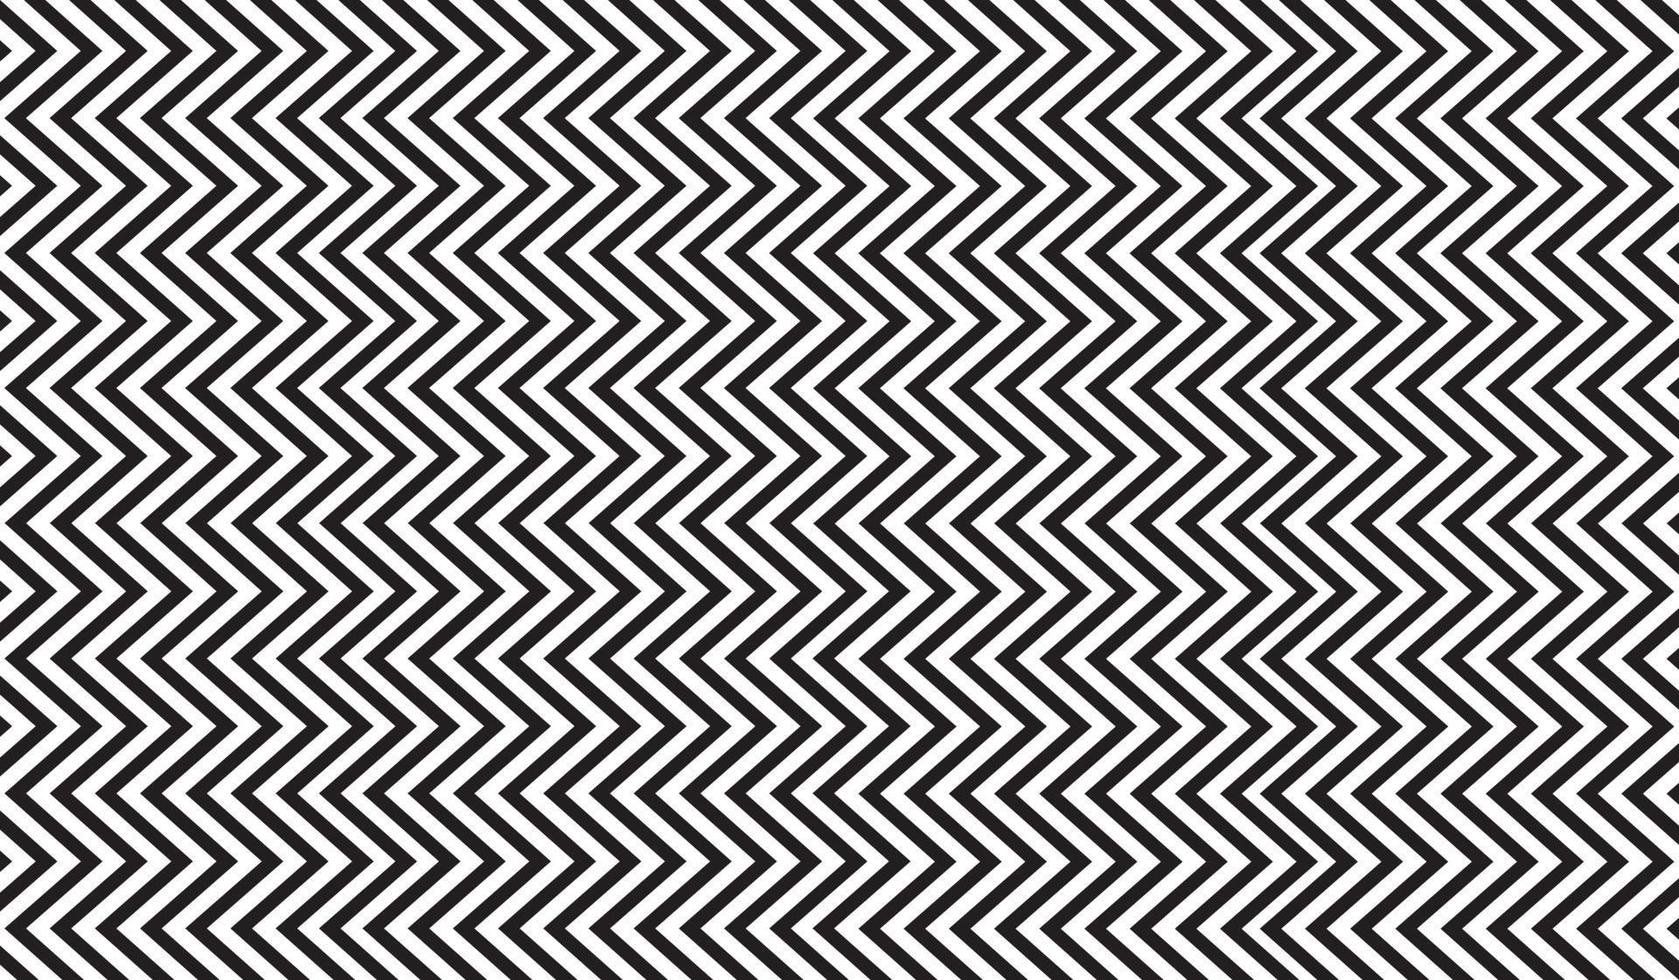 padrão de listras em zigue-zague horizontal preto e branco. padrão geométrico de repetição em zigue-zague. desenho vetorial vetor